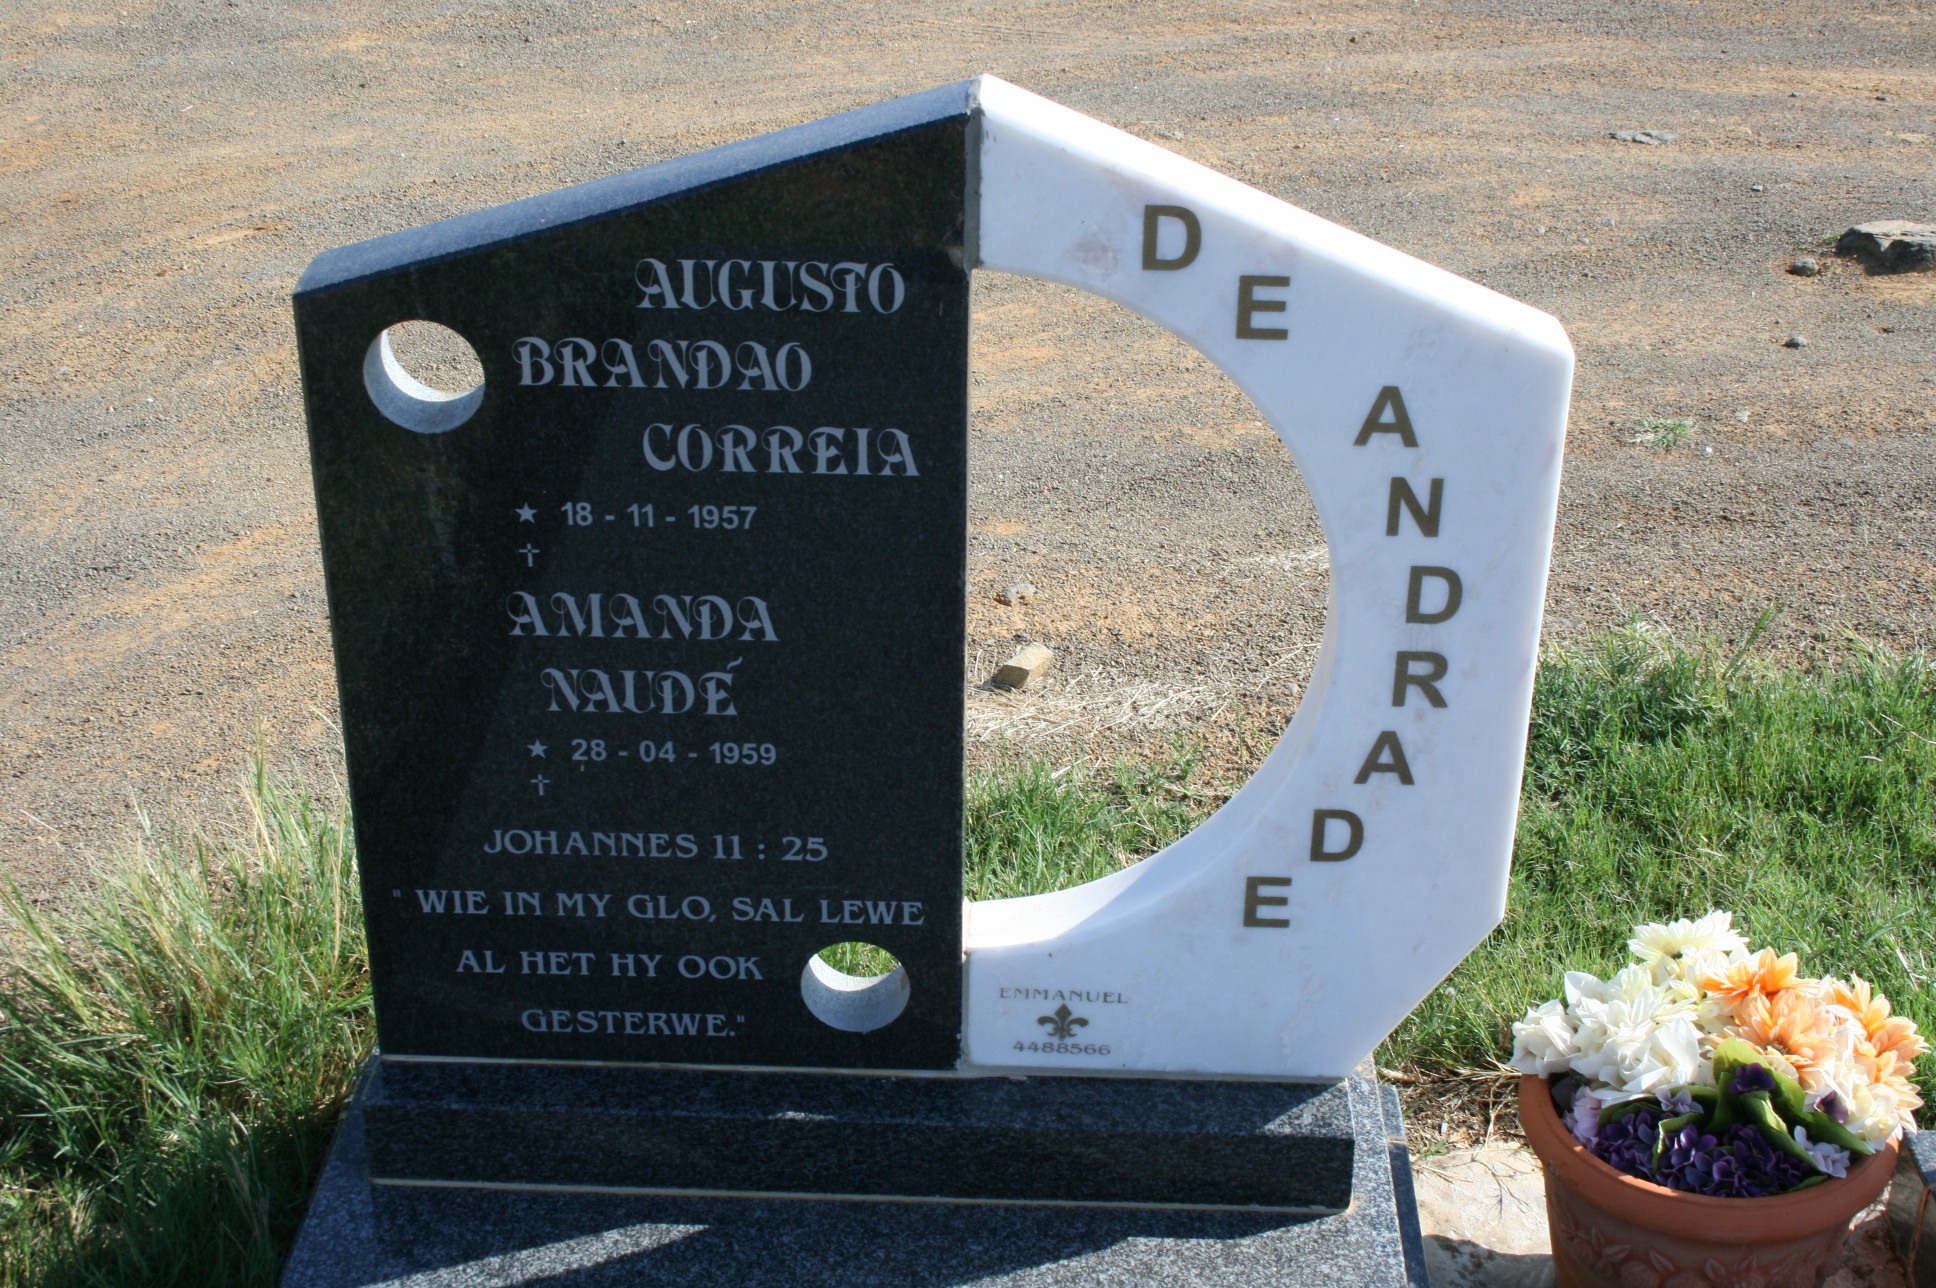 ANDRADE Augusto Brandao Correia, de 1957- & Amanda NAUDE 1959-